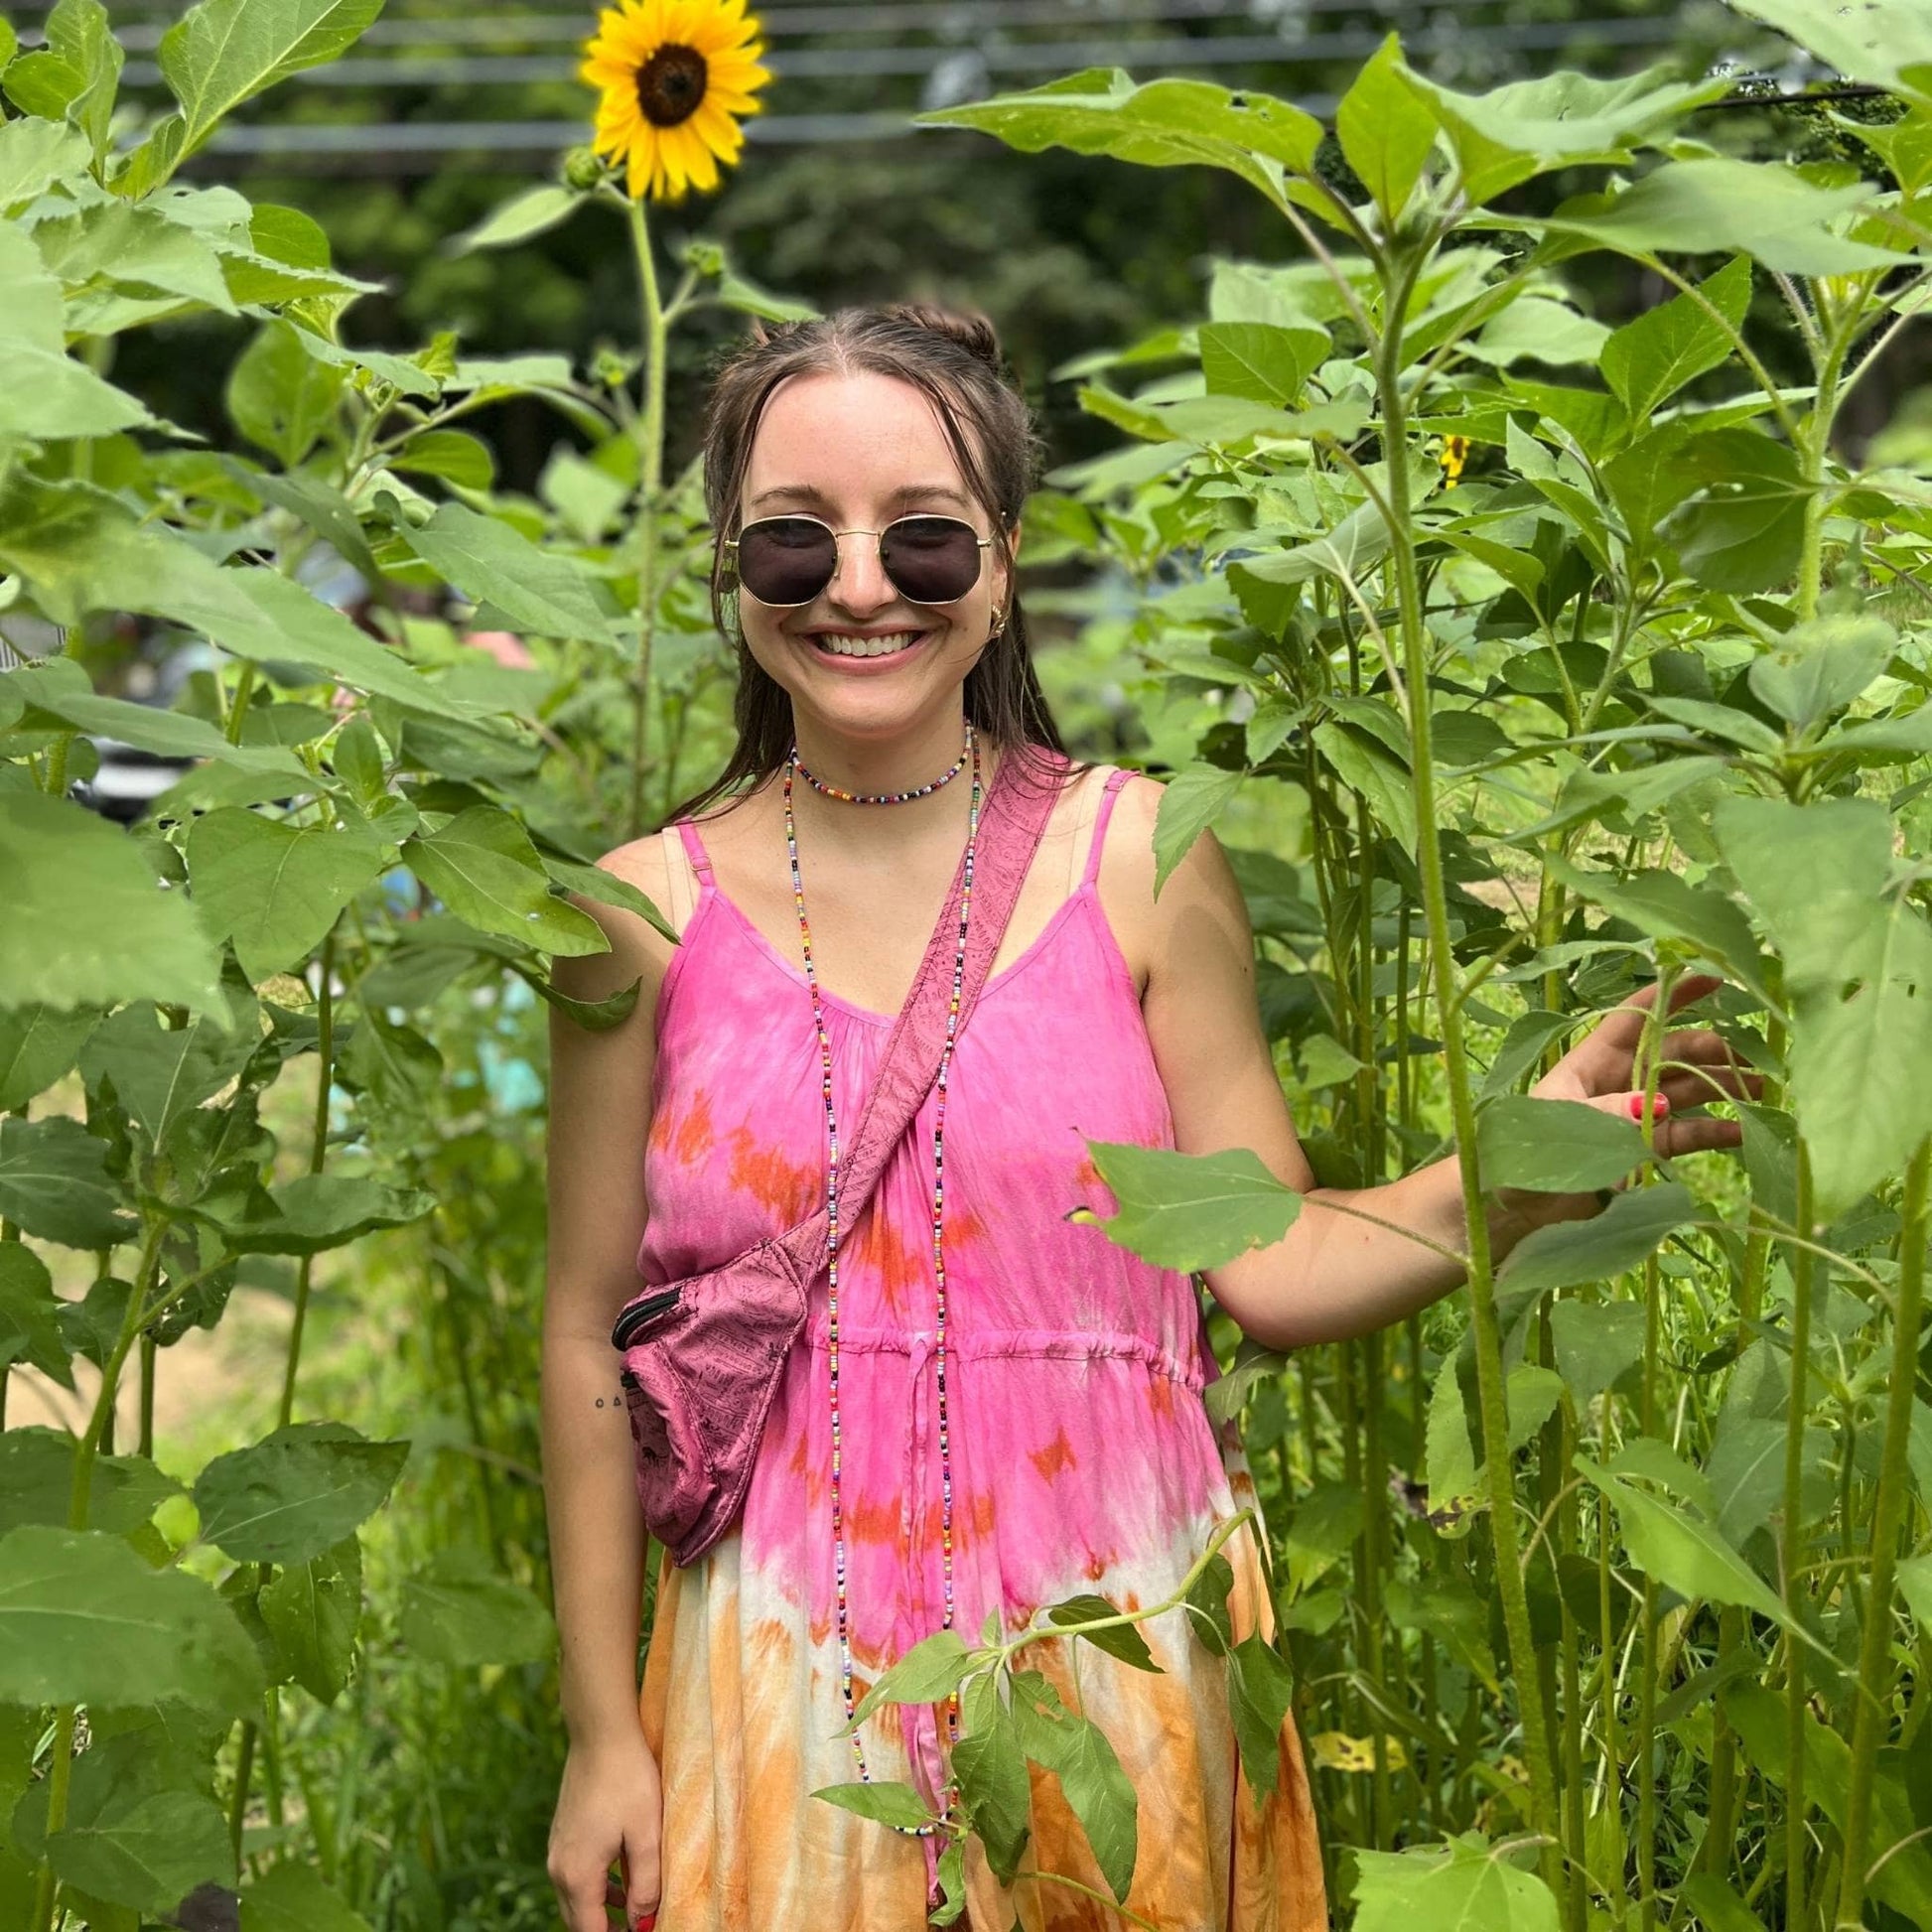 Model is walking through a sunflower field wearing the rainbow sherbet tie dye maxi dress.